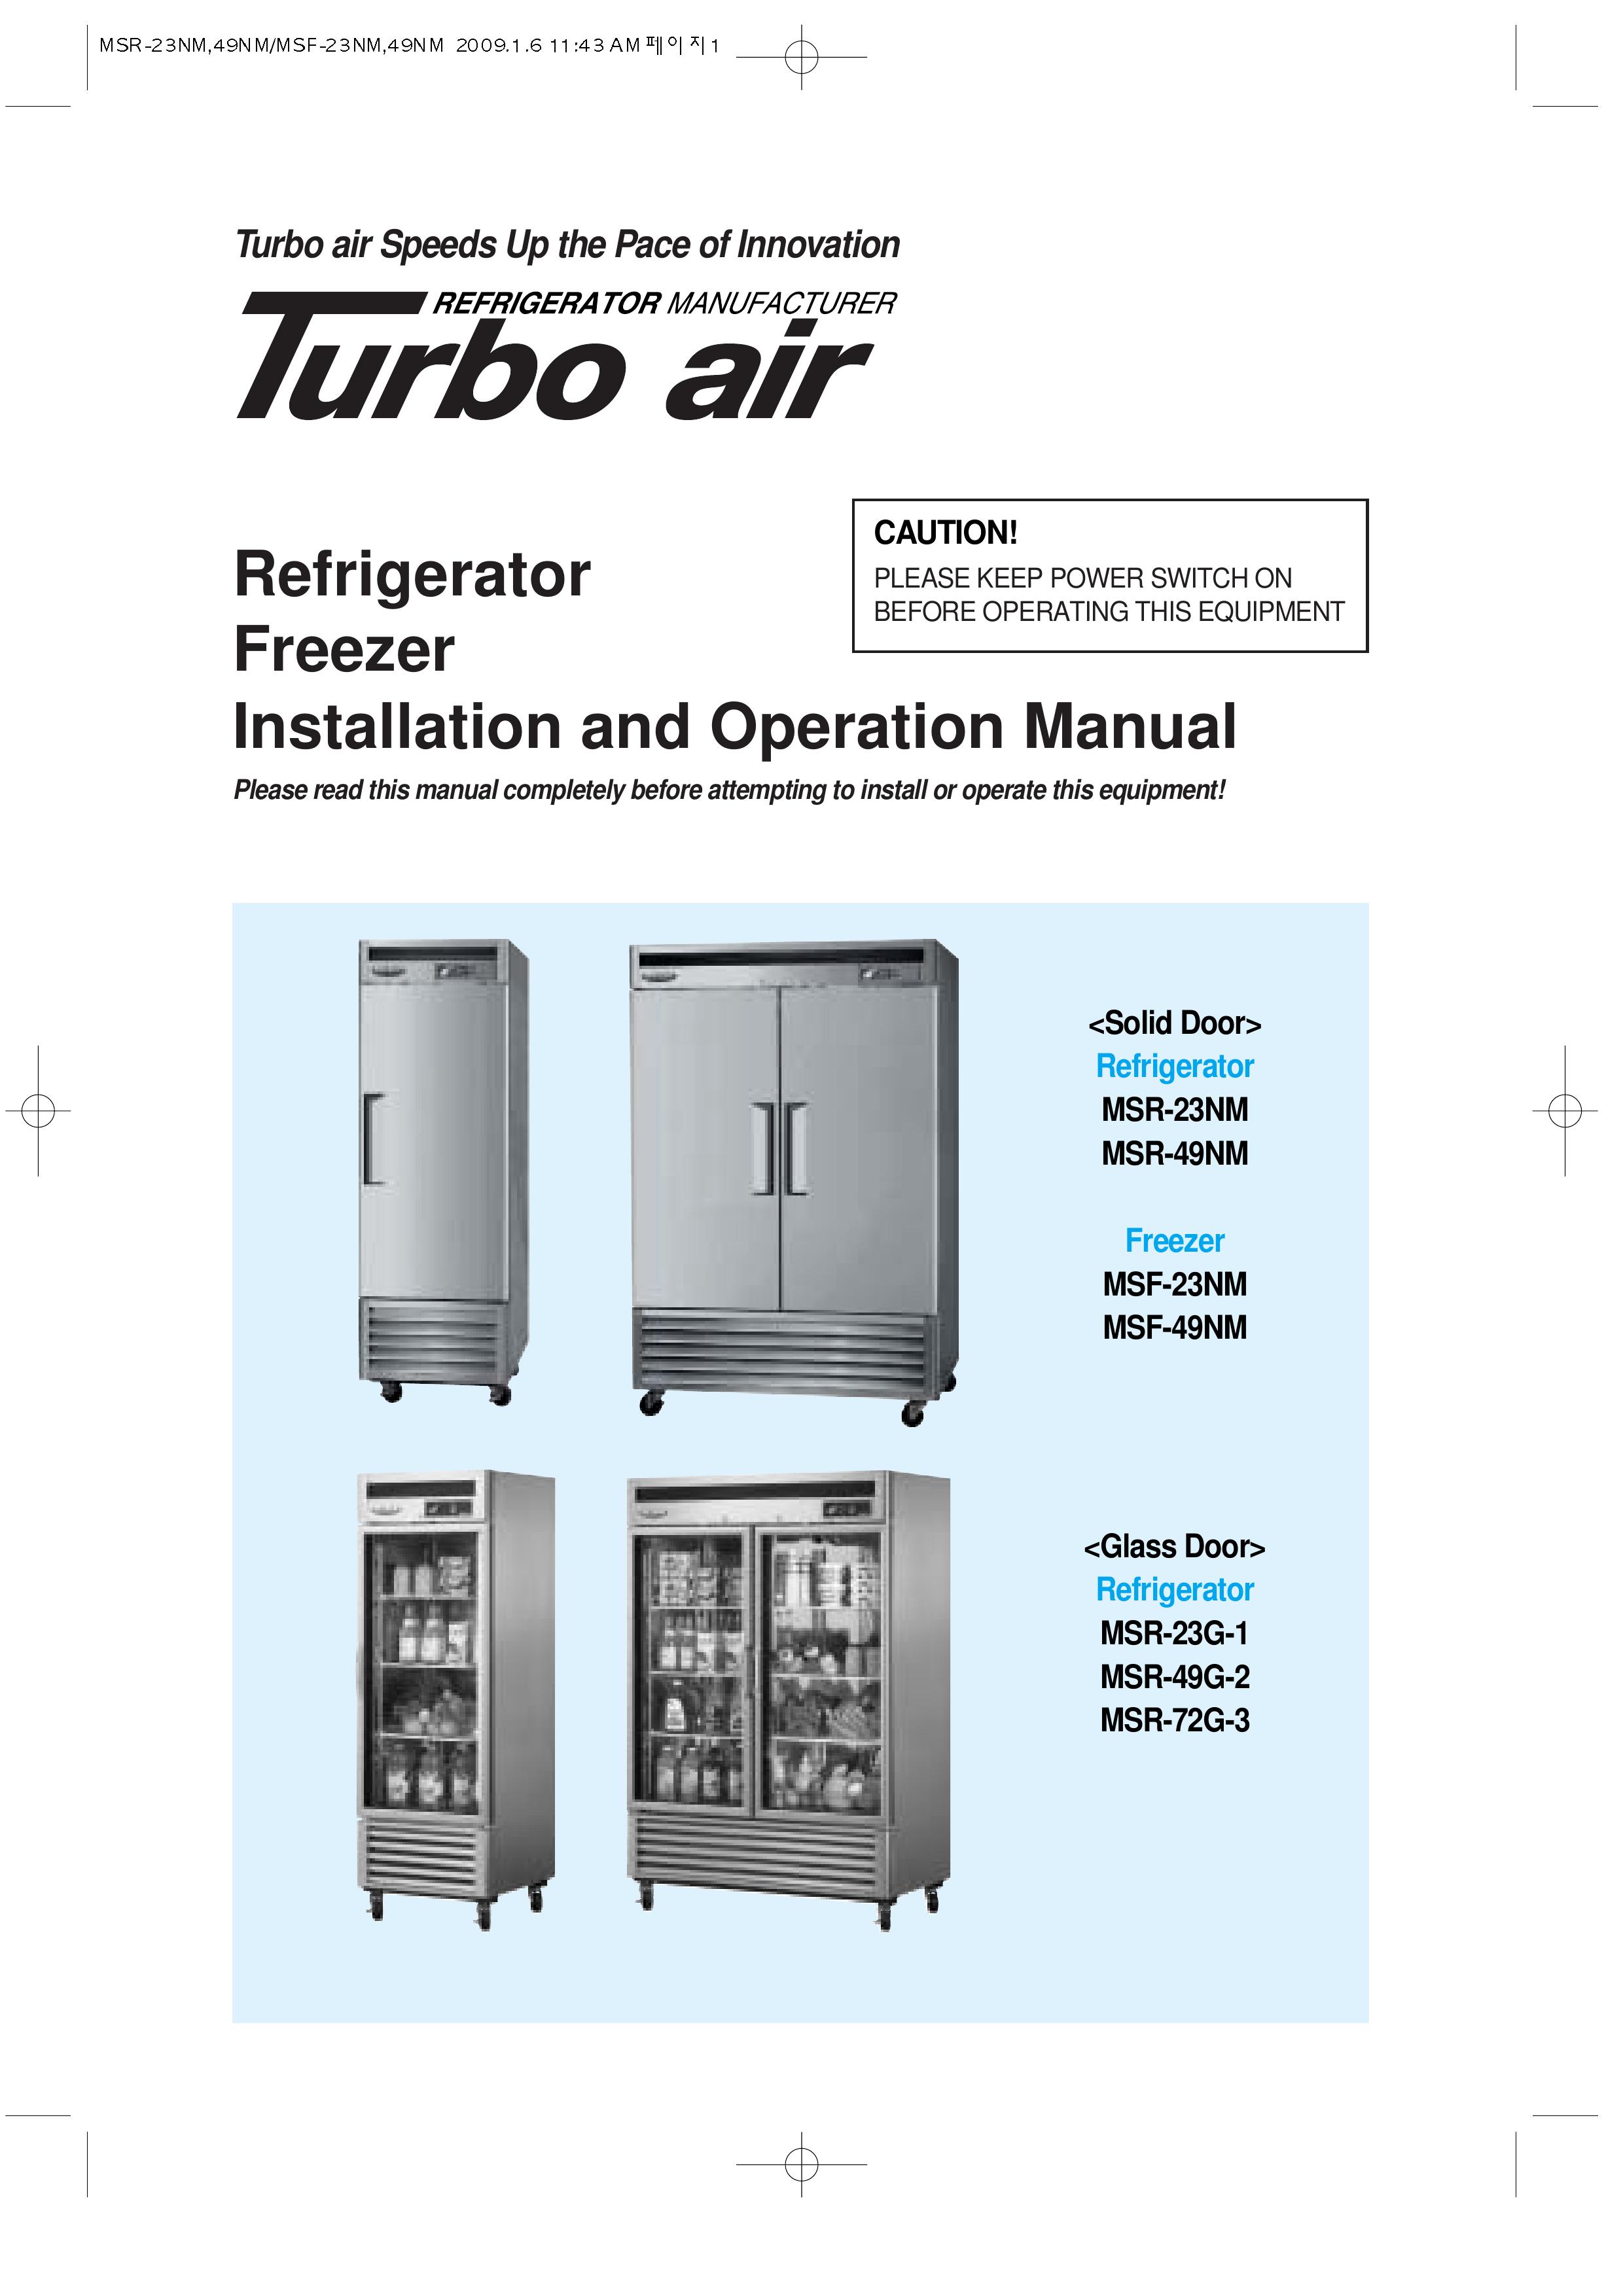 Turbo Air MSR-72G-3 Refrigerator User Manual